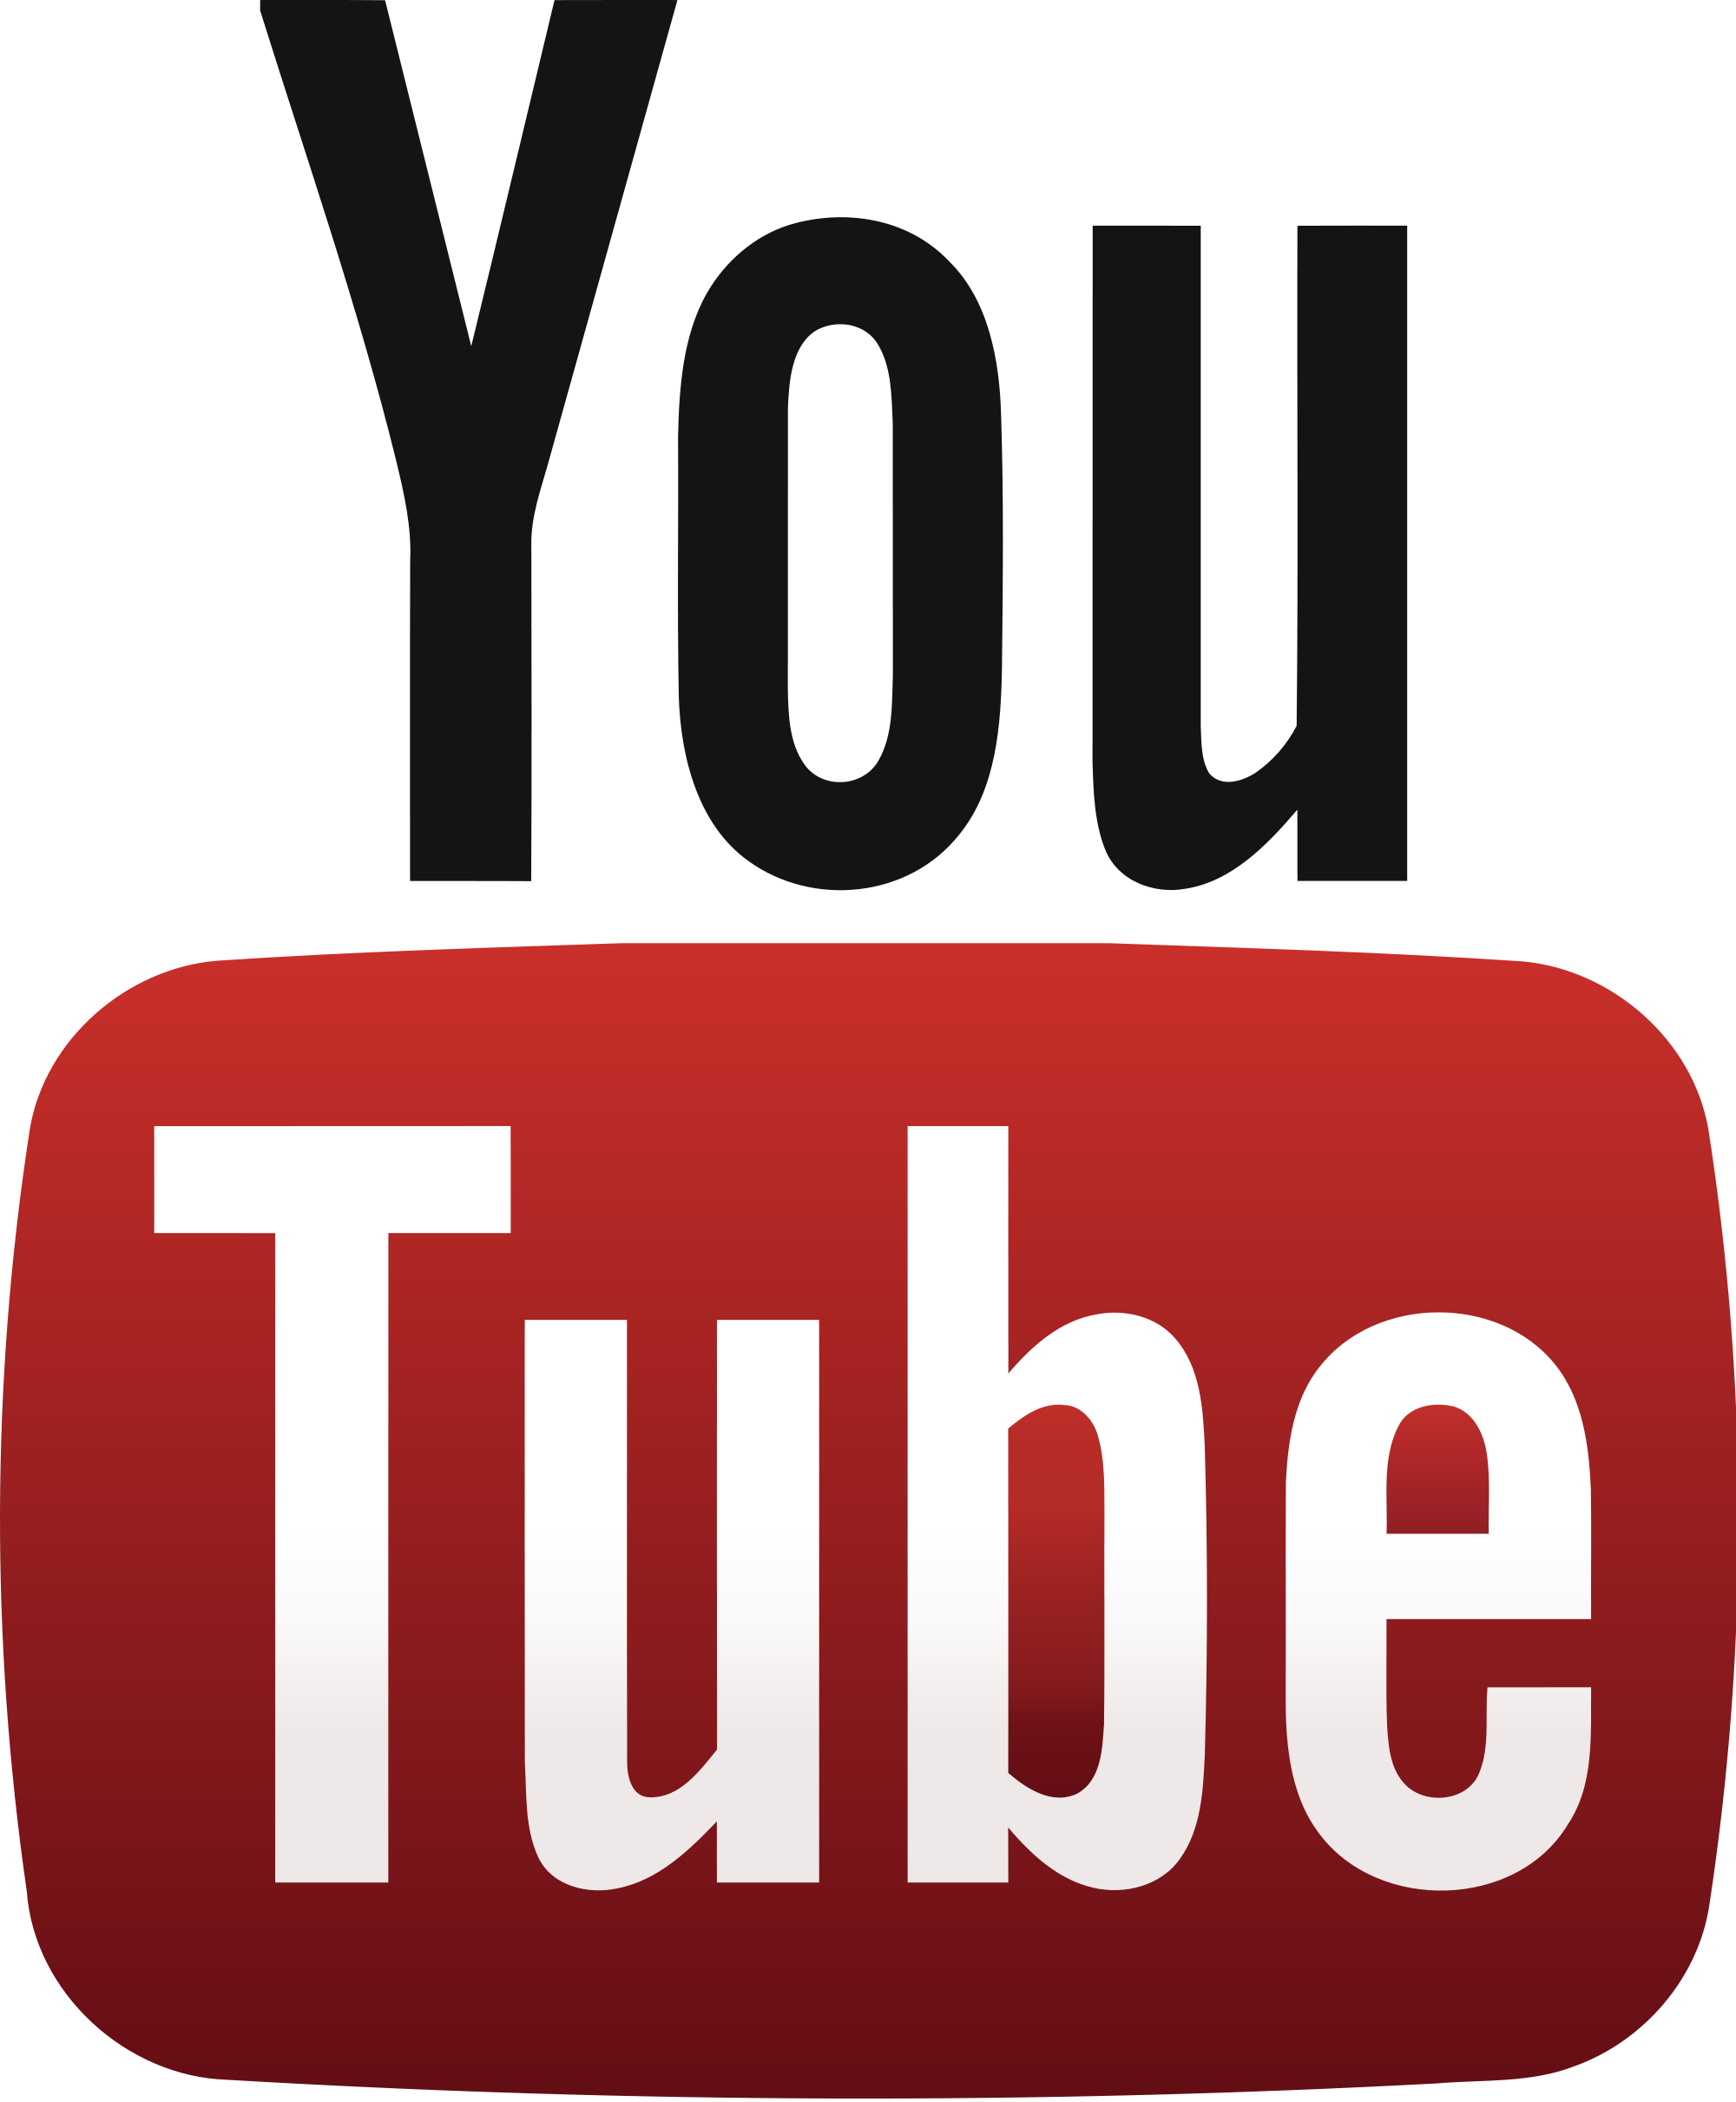 Résultat de recherche d'images pour "logo youtube png"